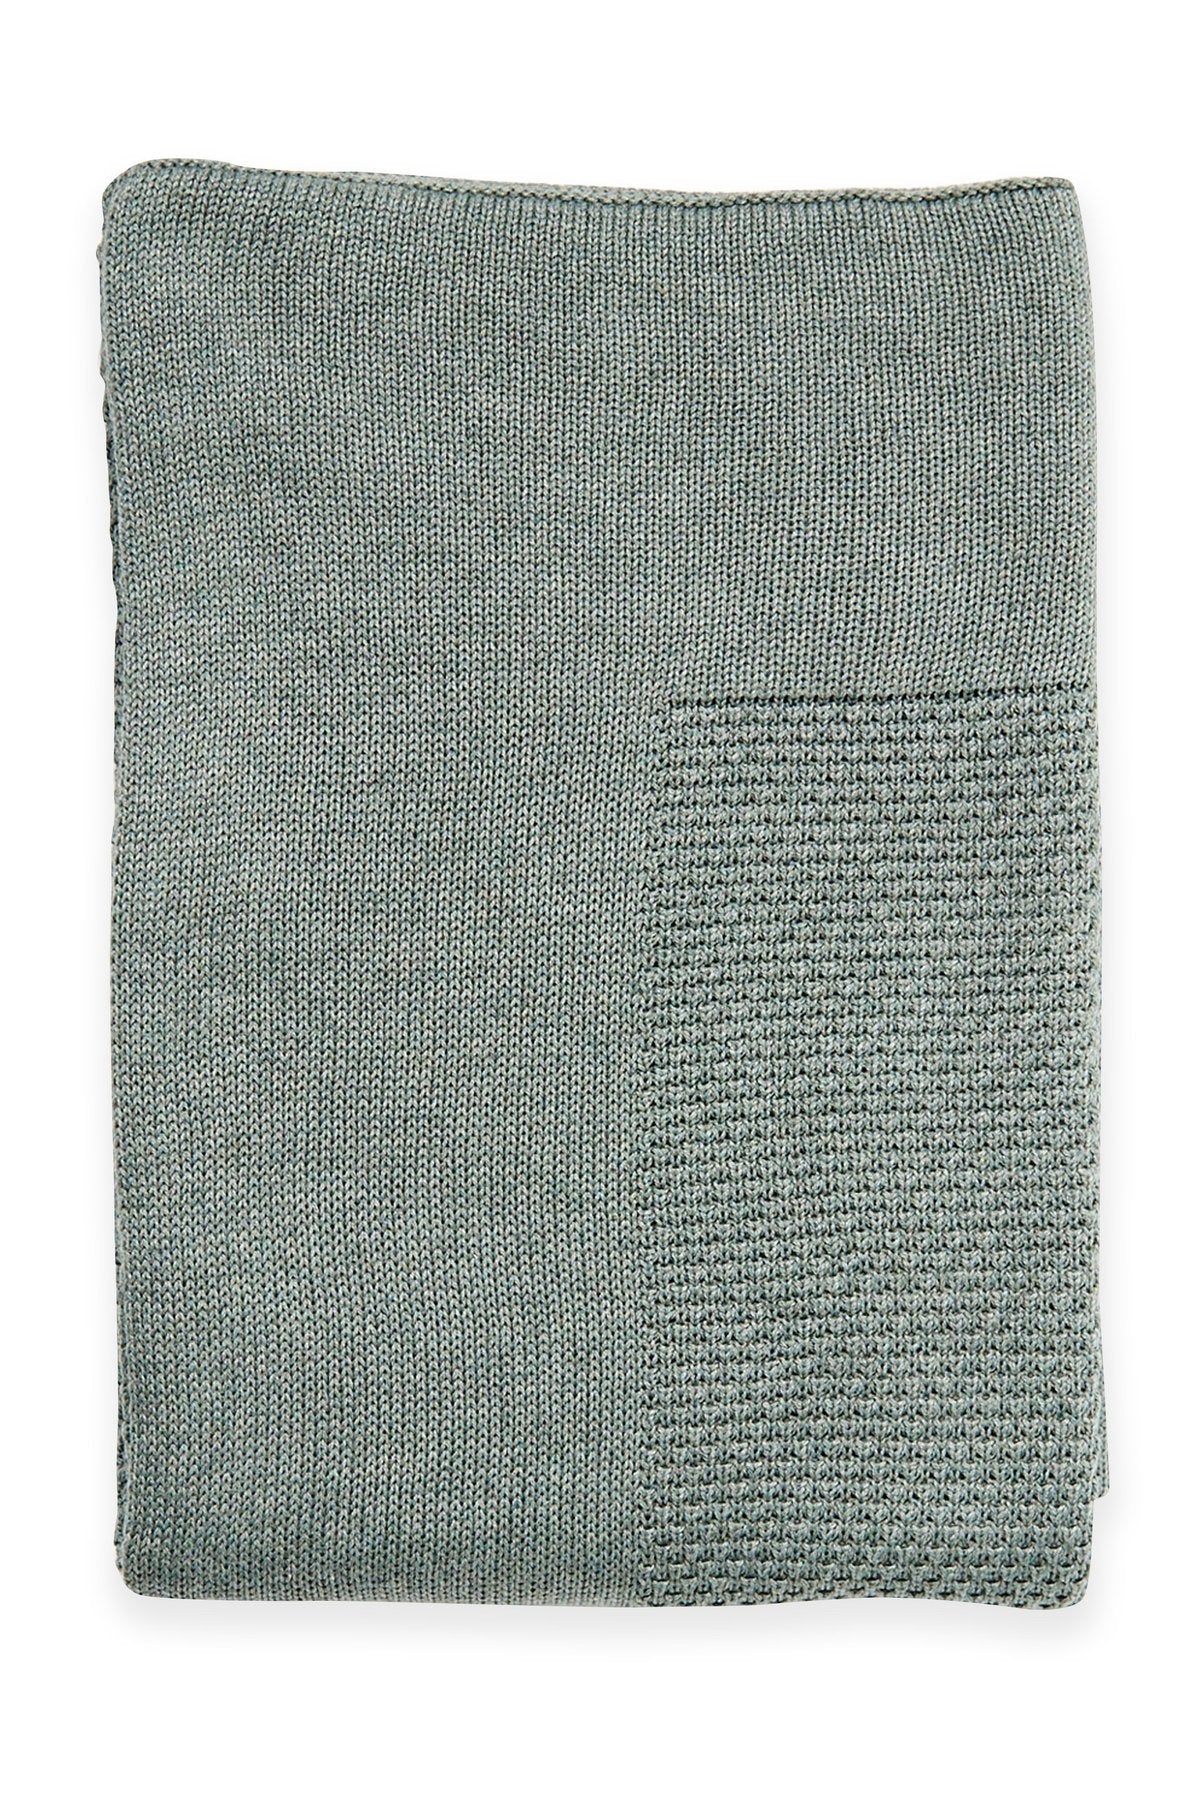 Little Bamboo Textured Knit Blanket - Whisper